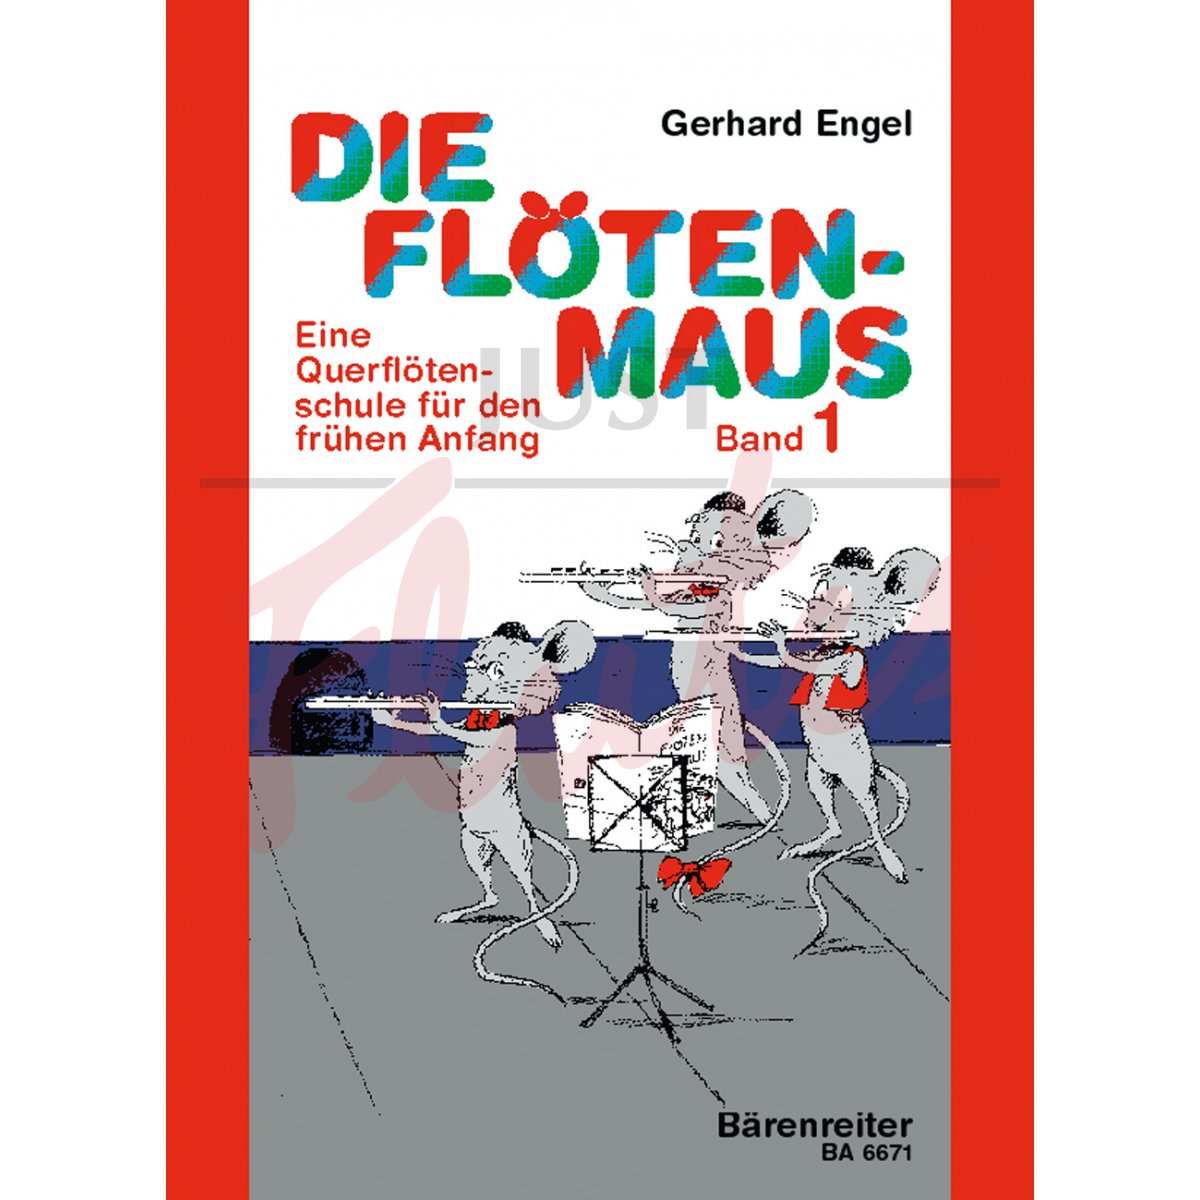 Die Floeten-Maus, Volume 1: Transverse Flute Lessons for the Beginner